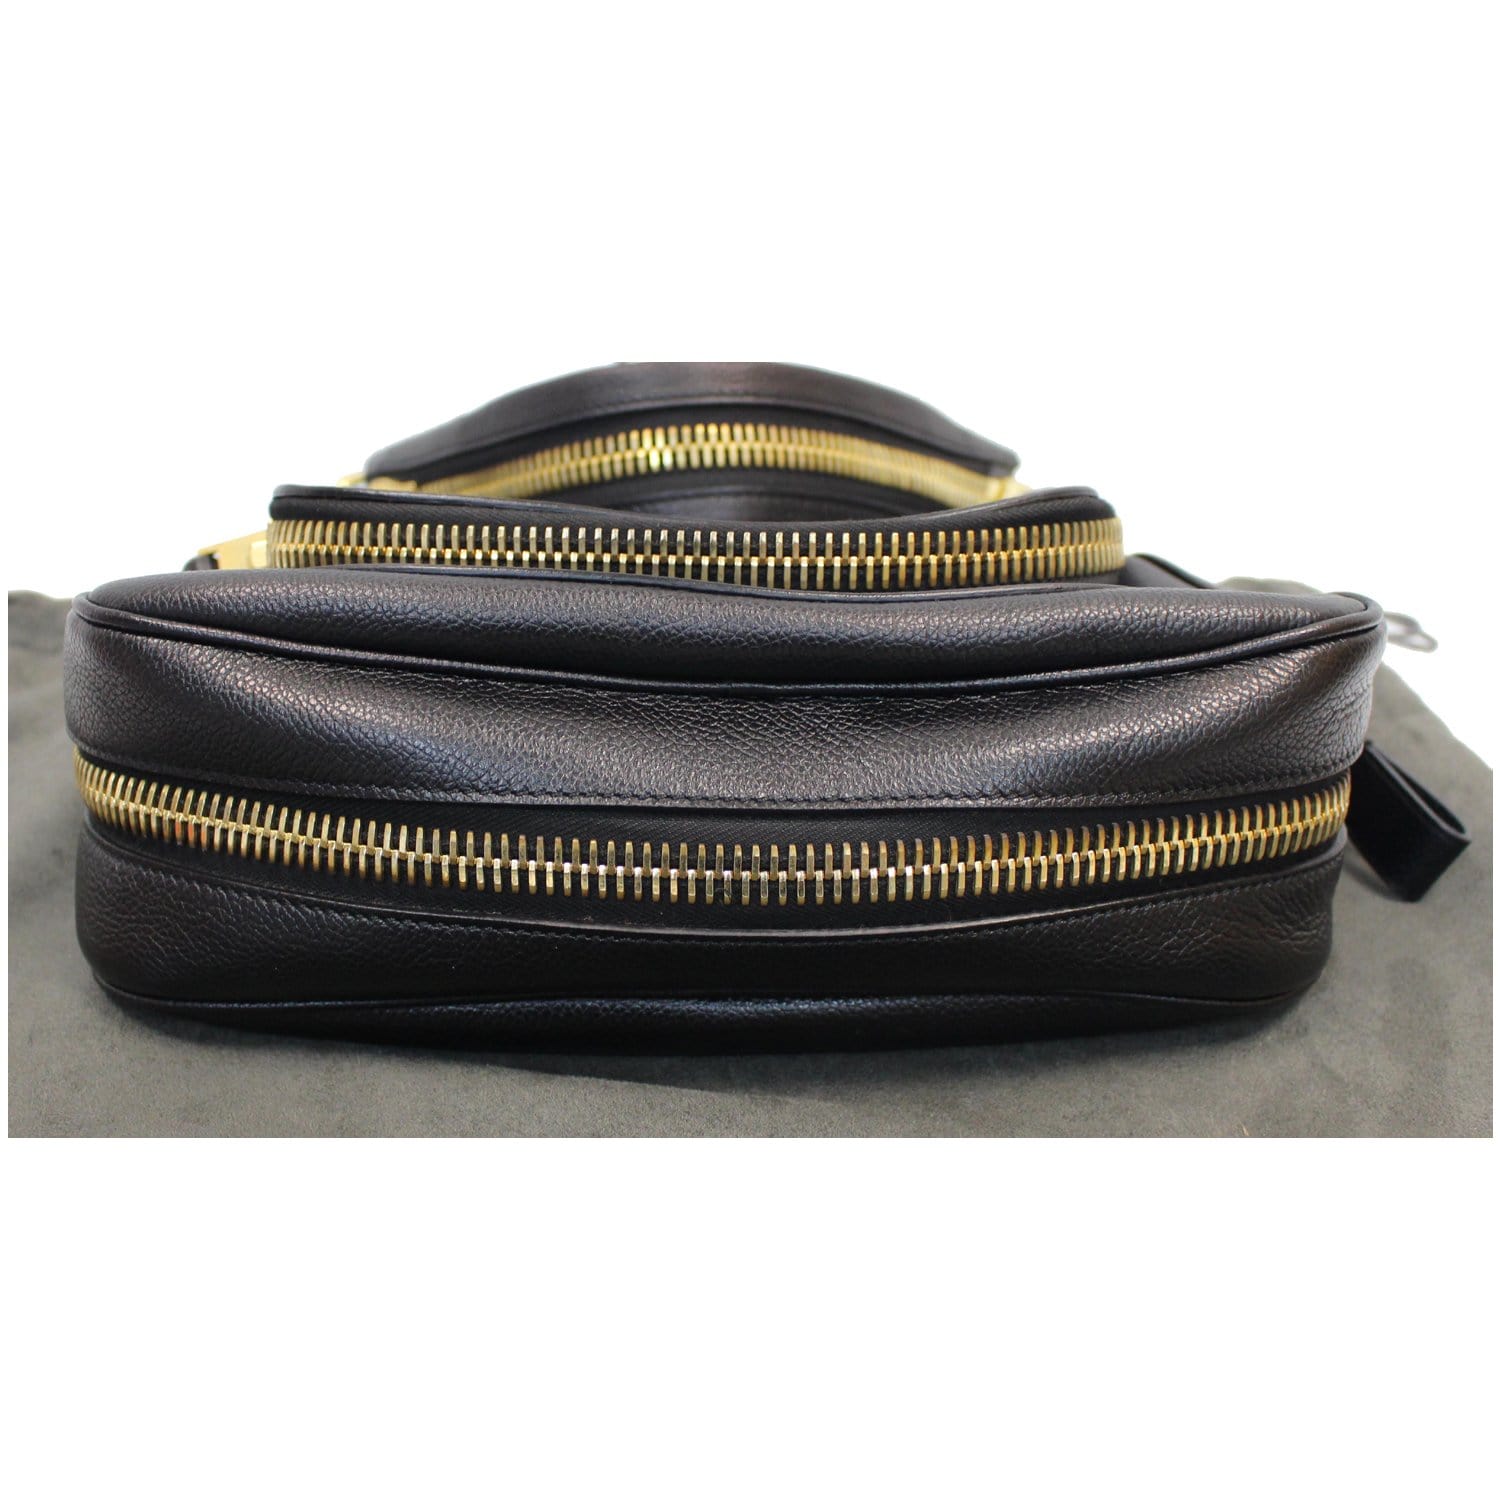 Jennifer Medium Leather Shoulder Bag in Beige - Tom Ford